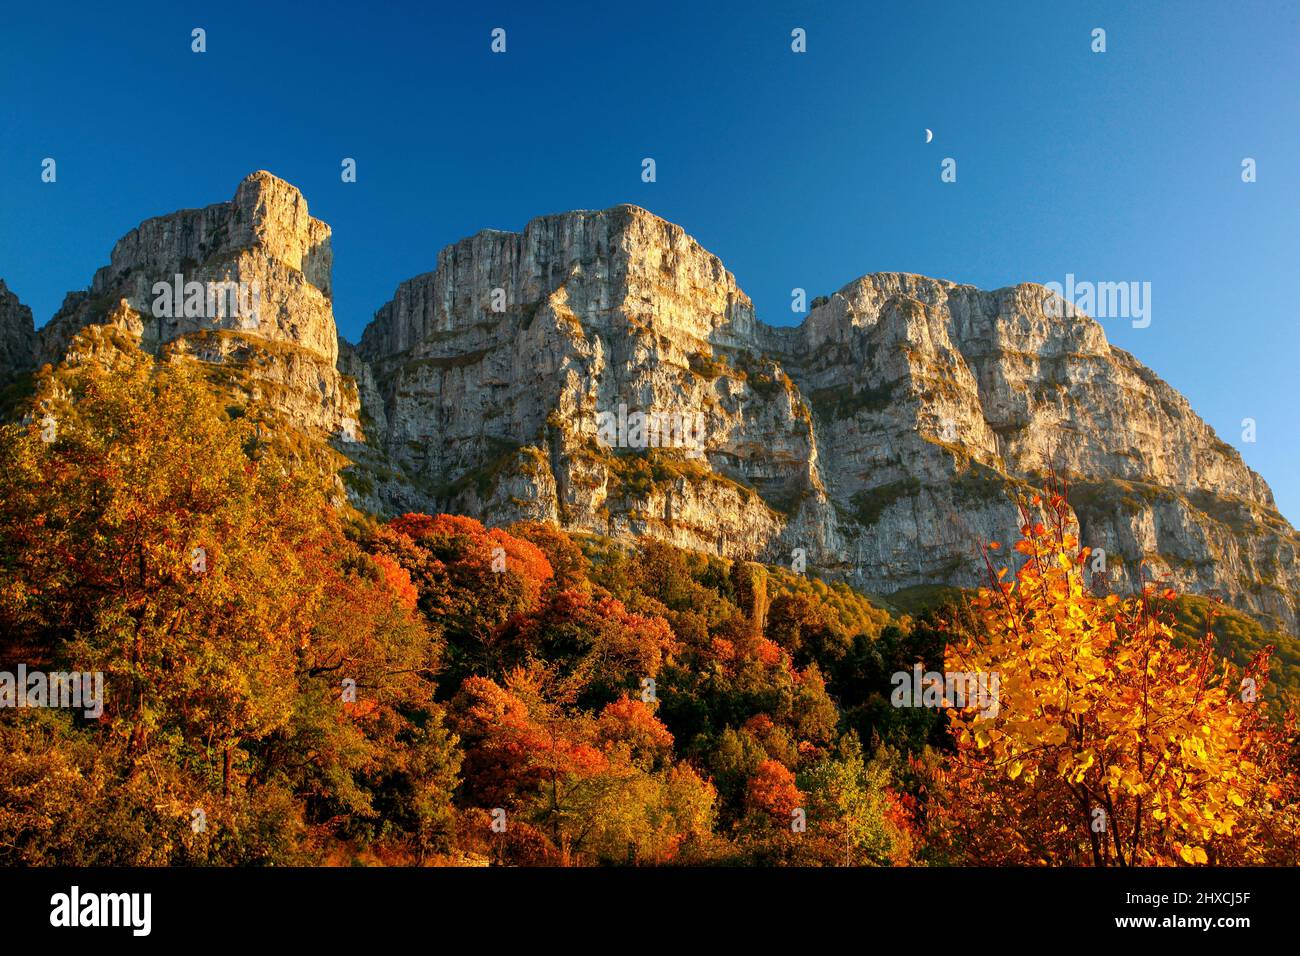 Le cosiddette 'Torri' di Astraka (o 'Tymfi') montagna, sopra Mikro Papingo villaggio,. Regione di Zagori, prefettura di Ioannina, Epiro, Grecia. Foto Stock